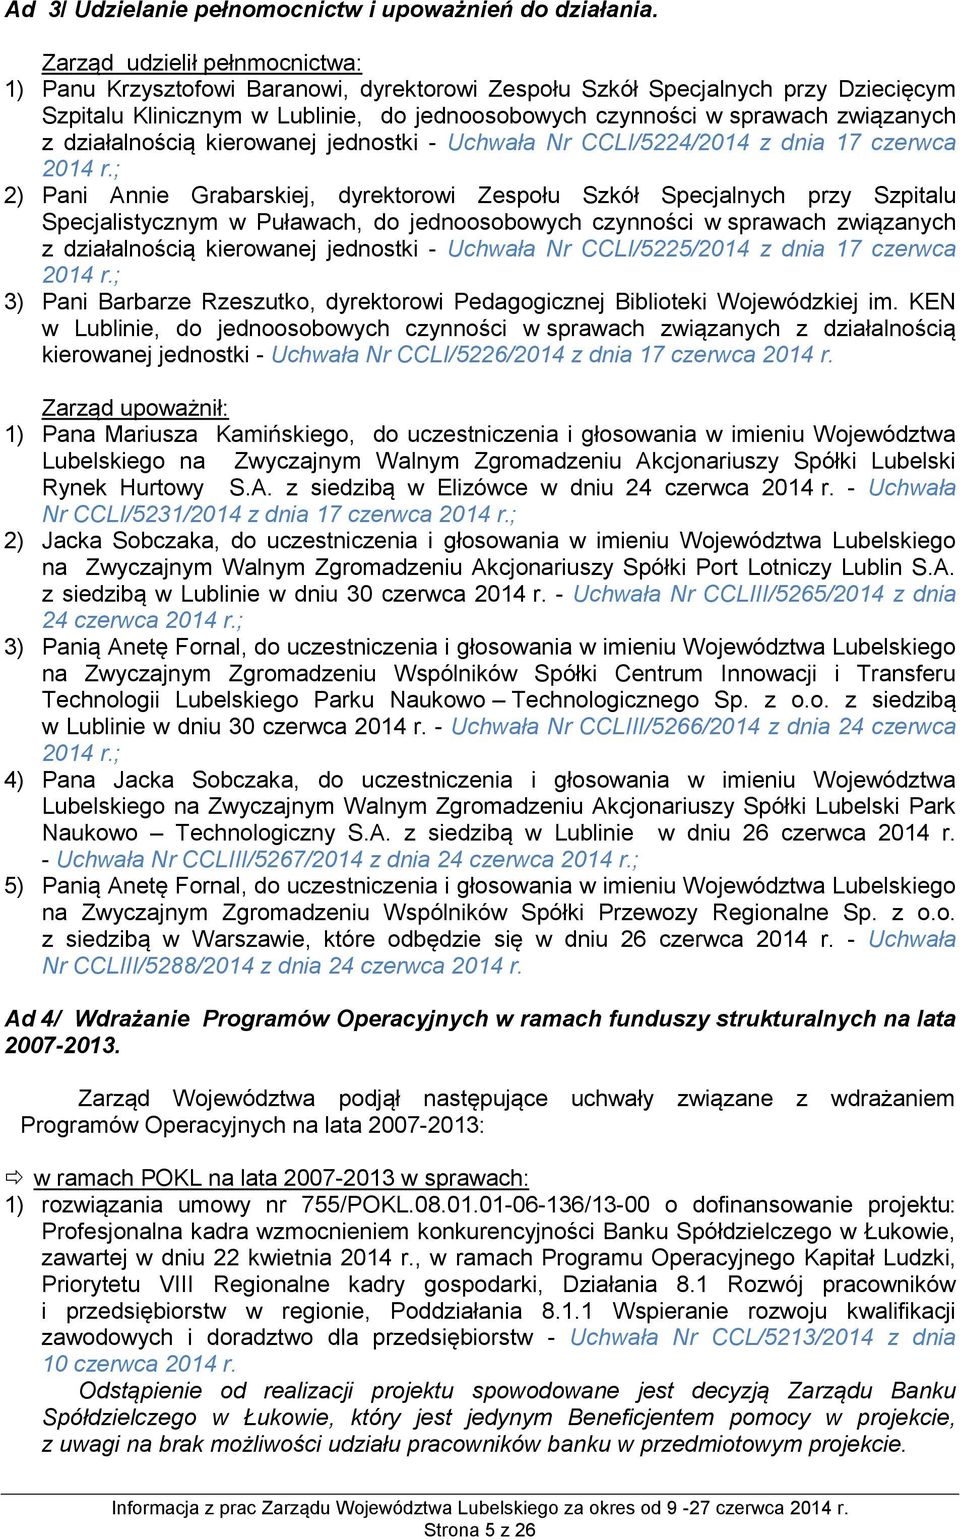 działalnością kierowanej jednostki - Uchwała Nr CCLI/5224/2014 z dnia 17 czerwca 2014 r.